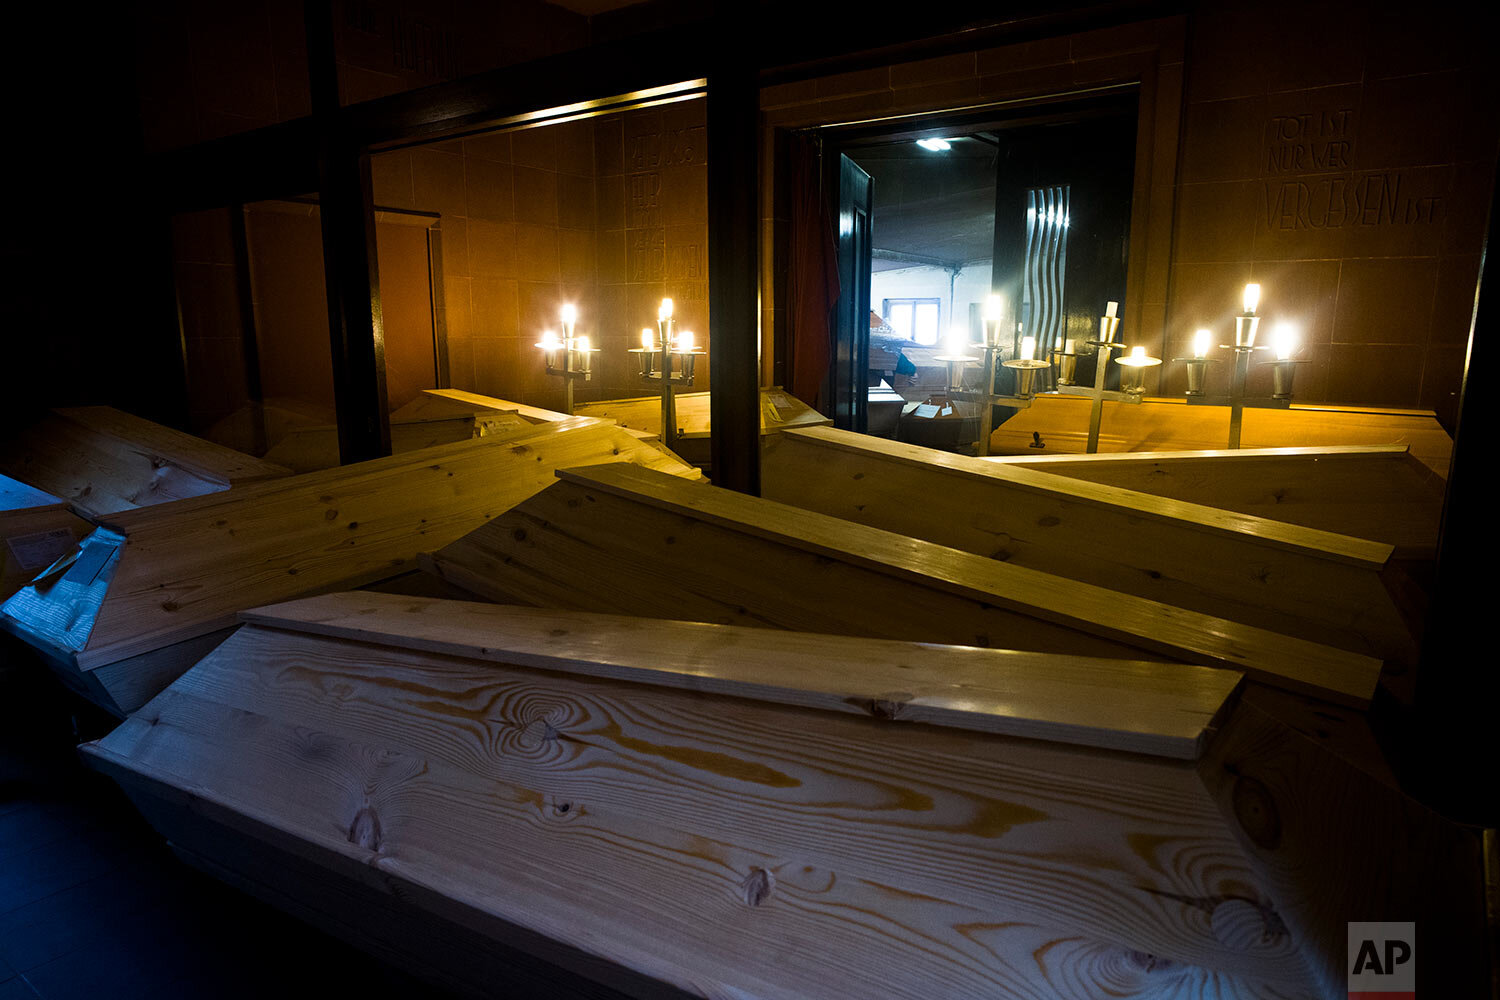  Coffins are stored in hallways of the crematorium in Meissen, Germany, Monday, Jan. 11, 2021. (AP Photo/Markus Schreiber) 